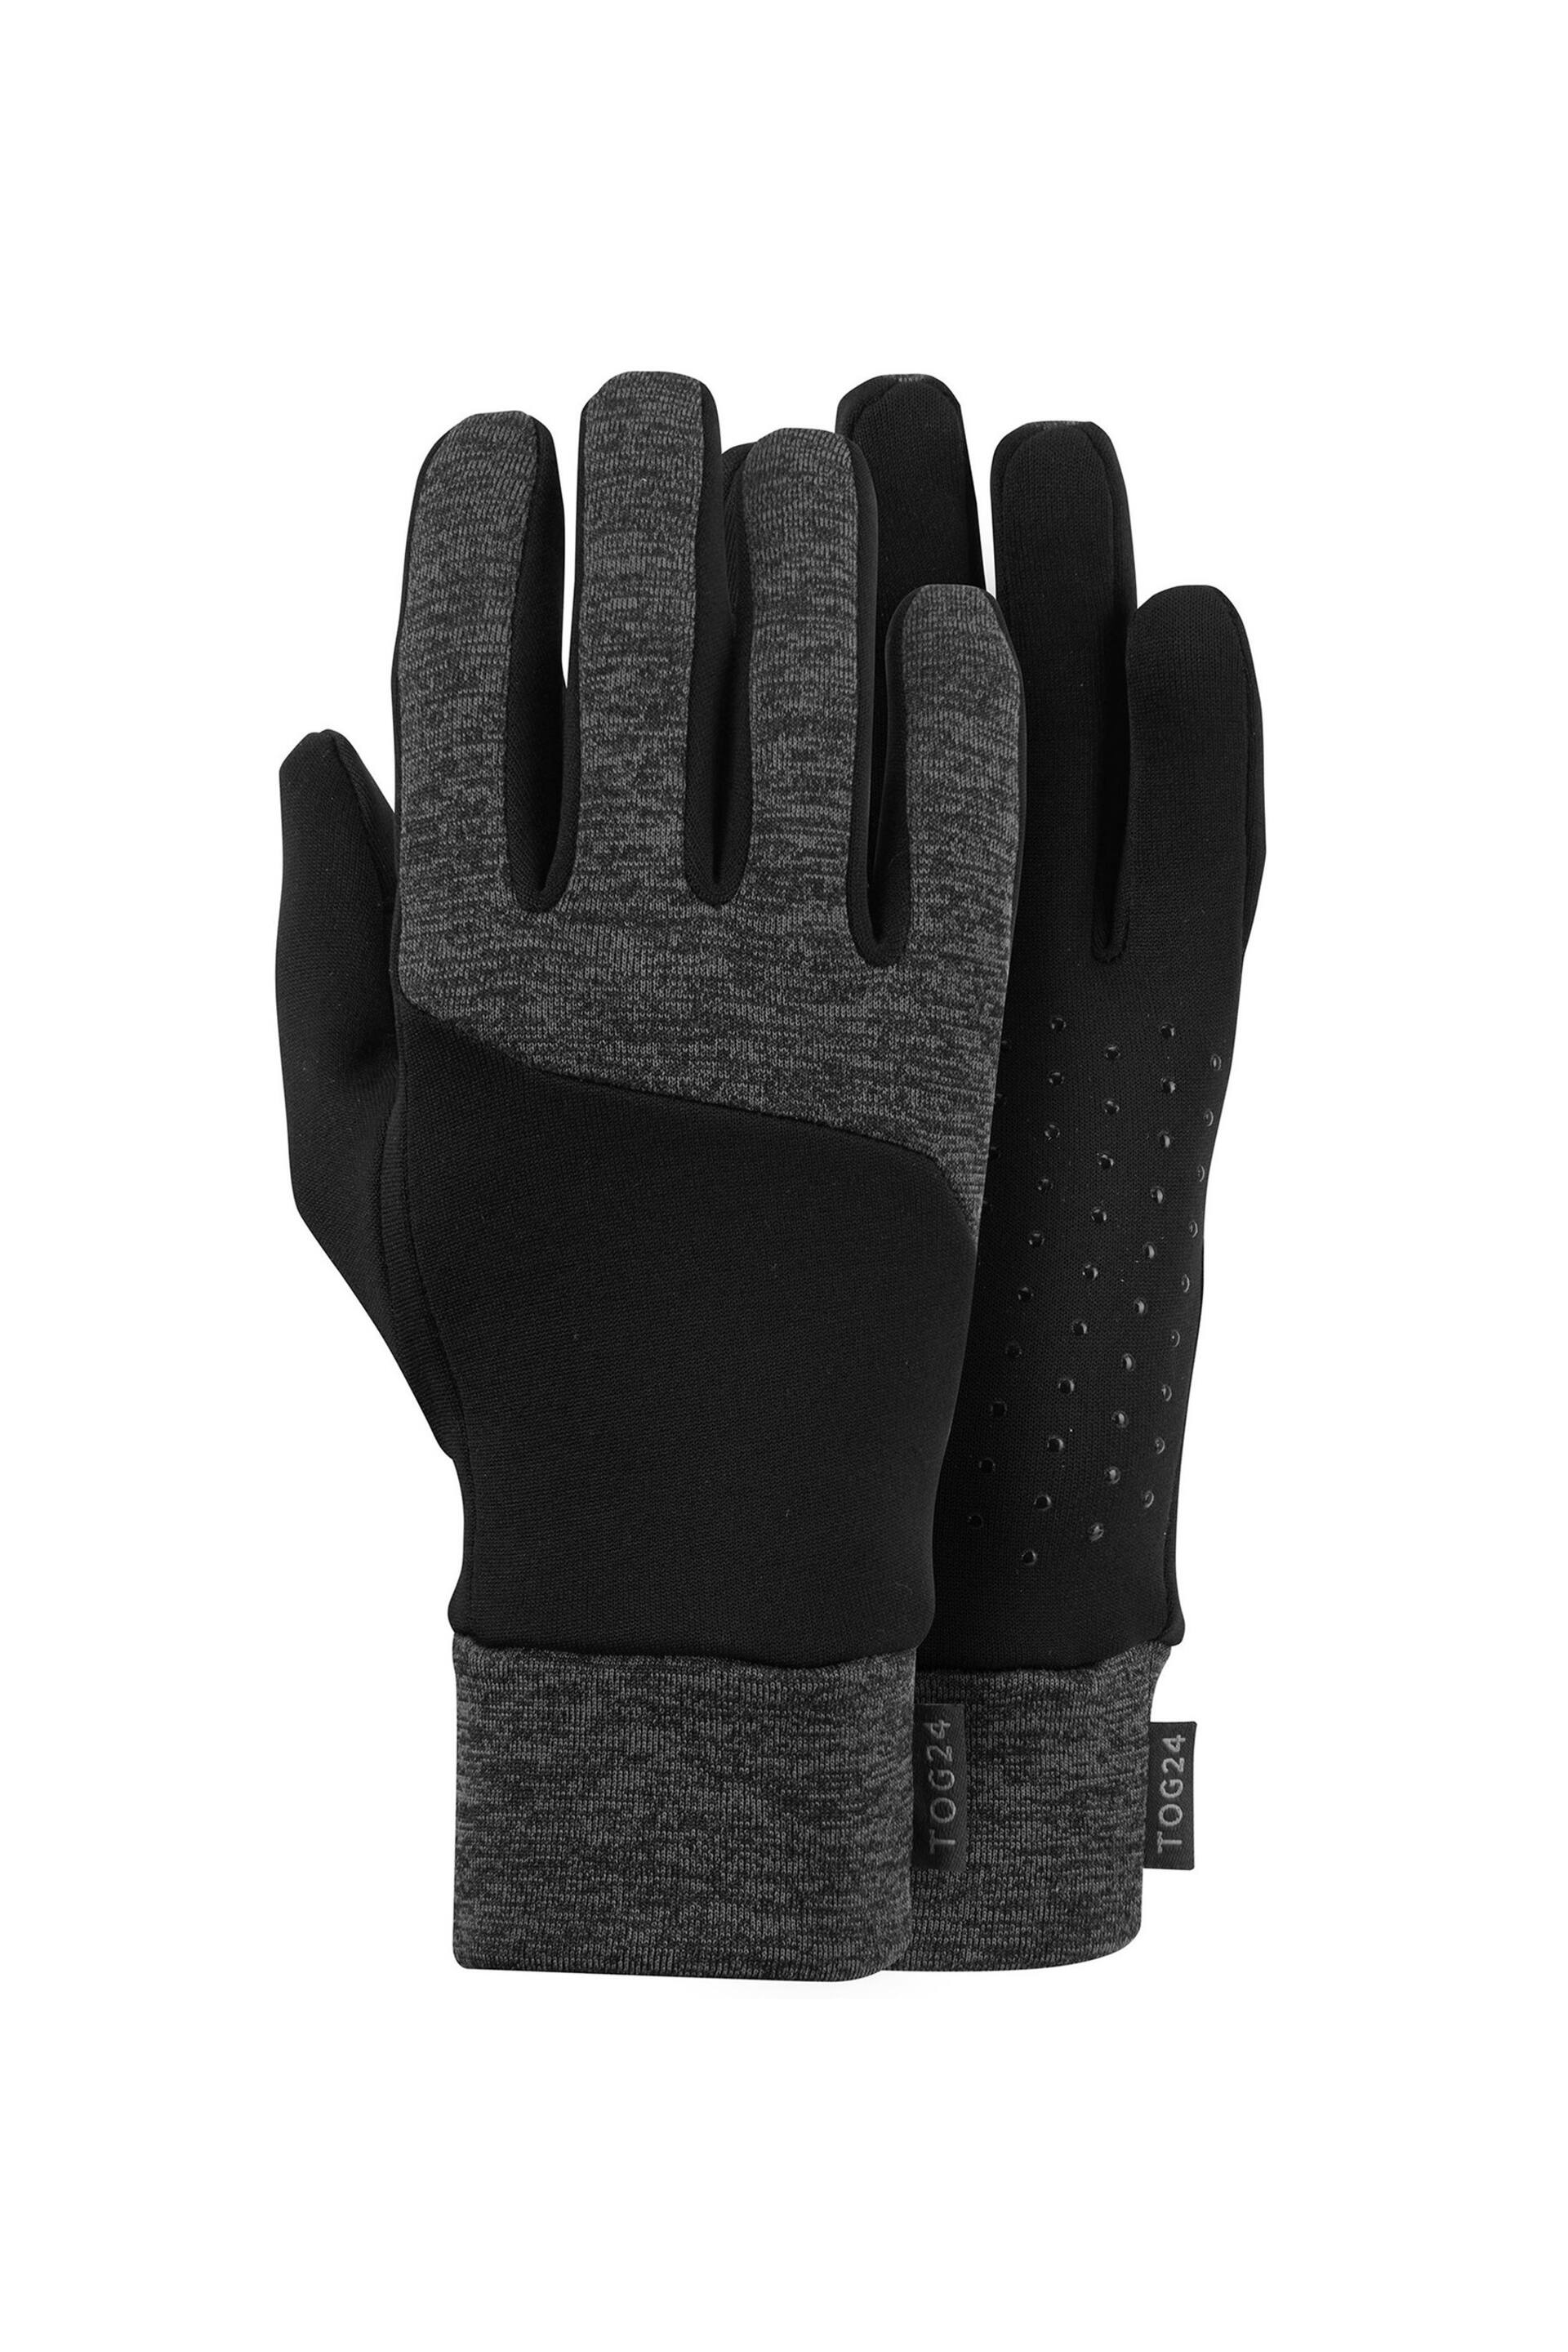 Tog 24 Grey Surge Gloves - Image 1 of 1